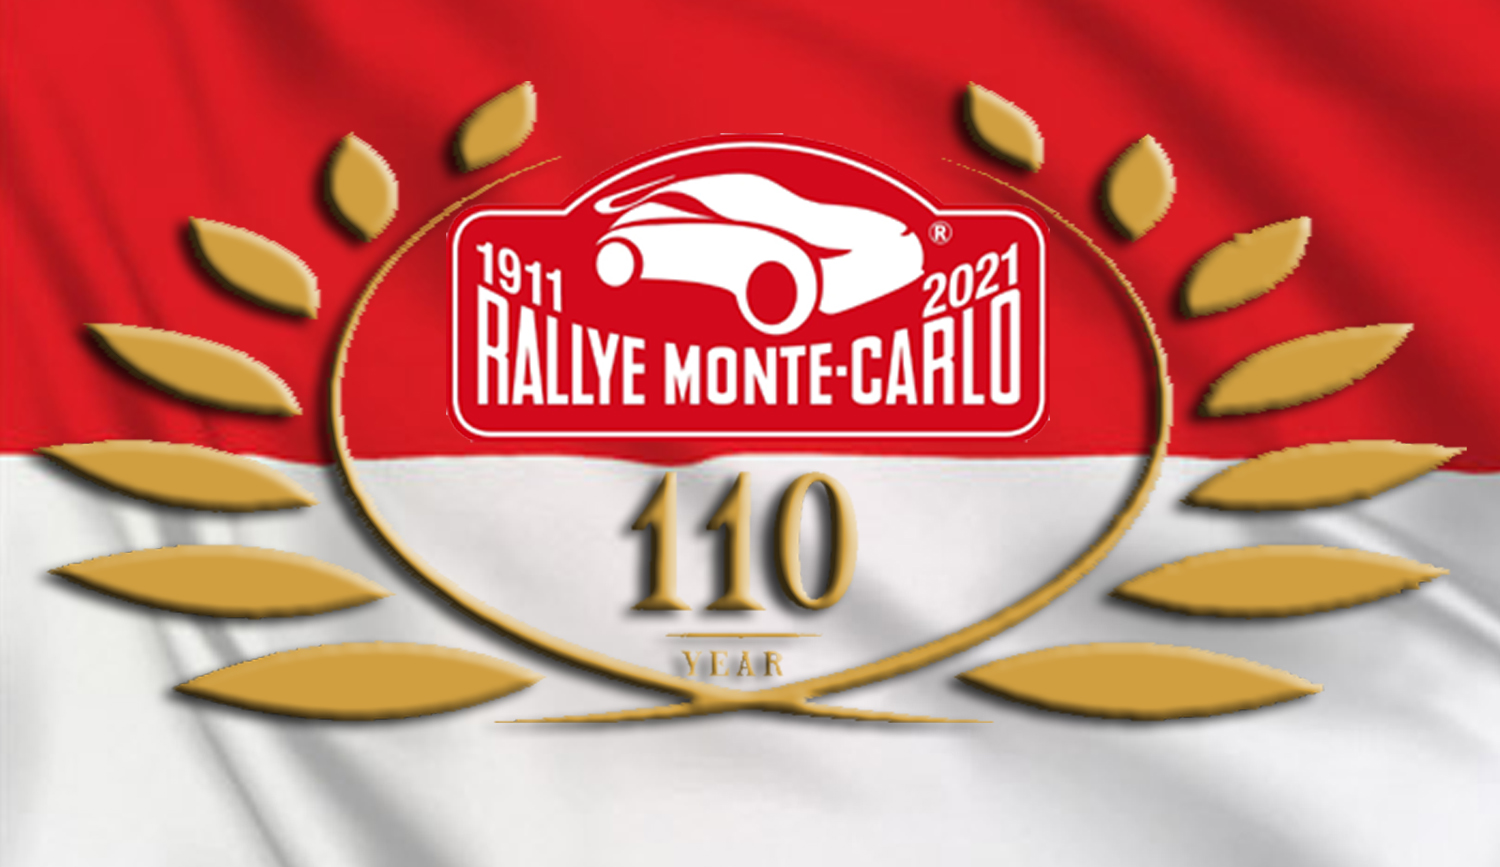 Rally Montecarlo 1911 2021